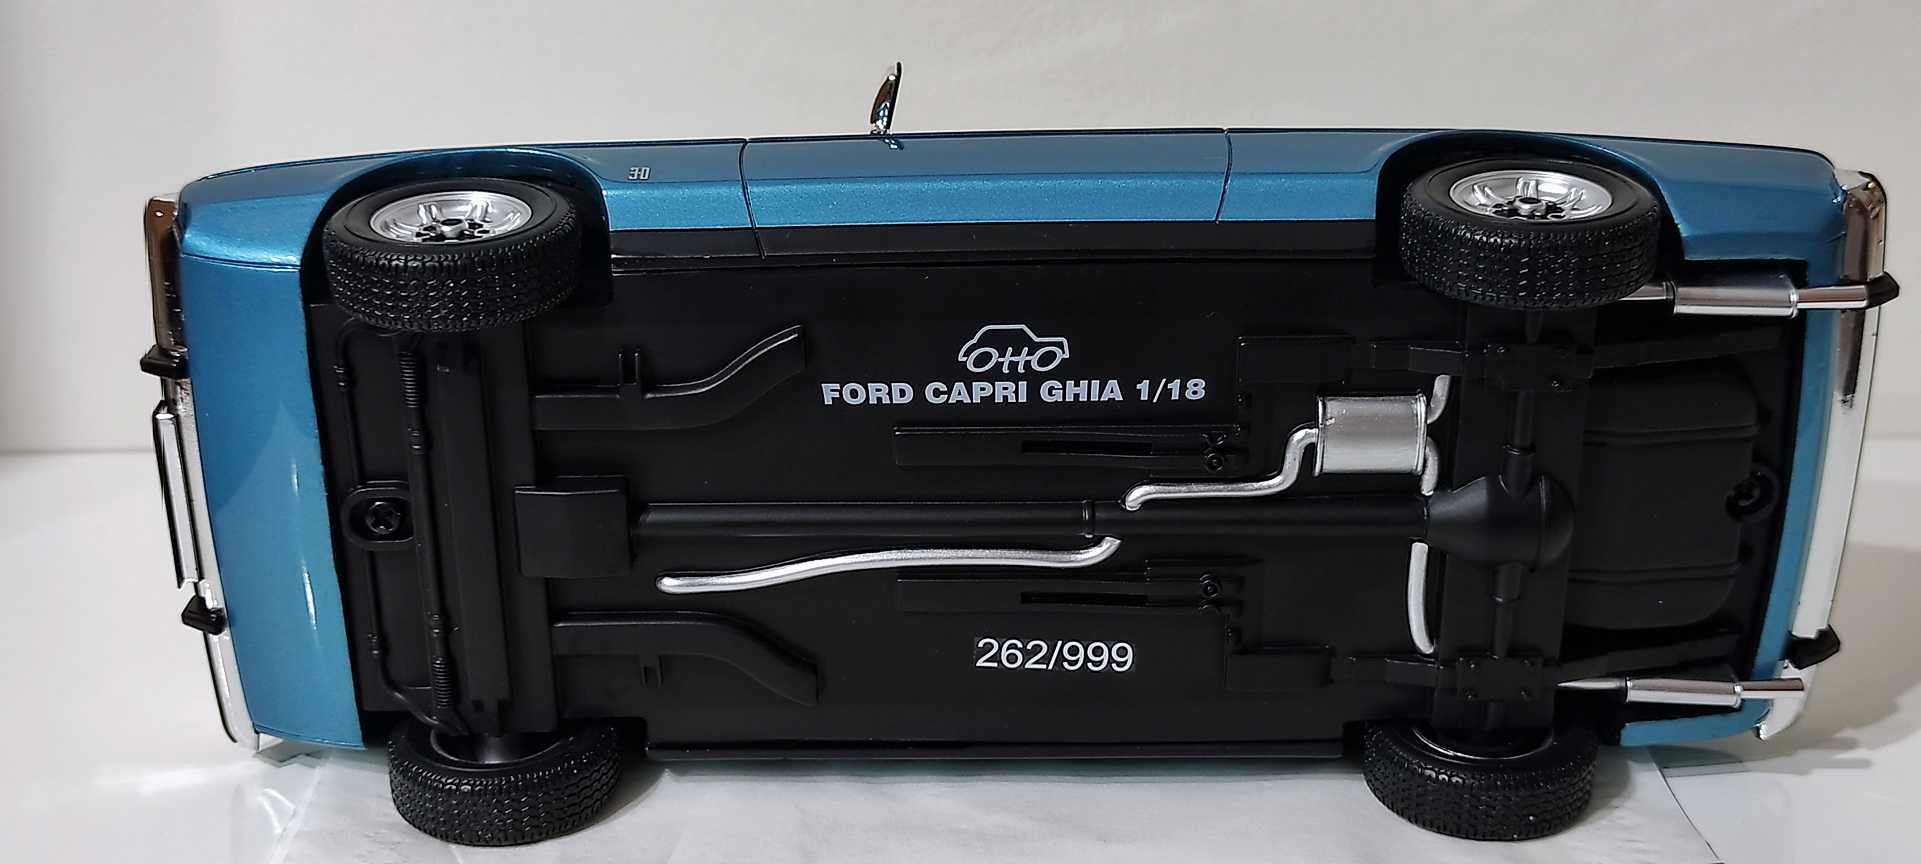 Ford Capri Mk2 3.0 Ghia Limit 262/999 OttO 1/18